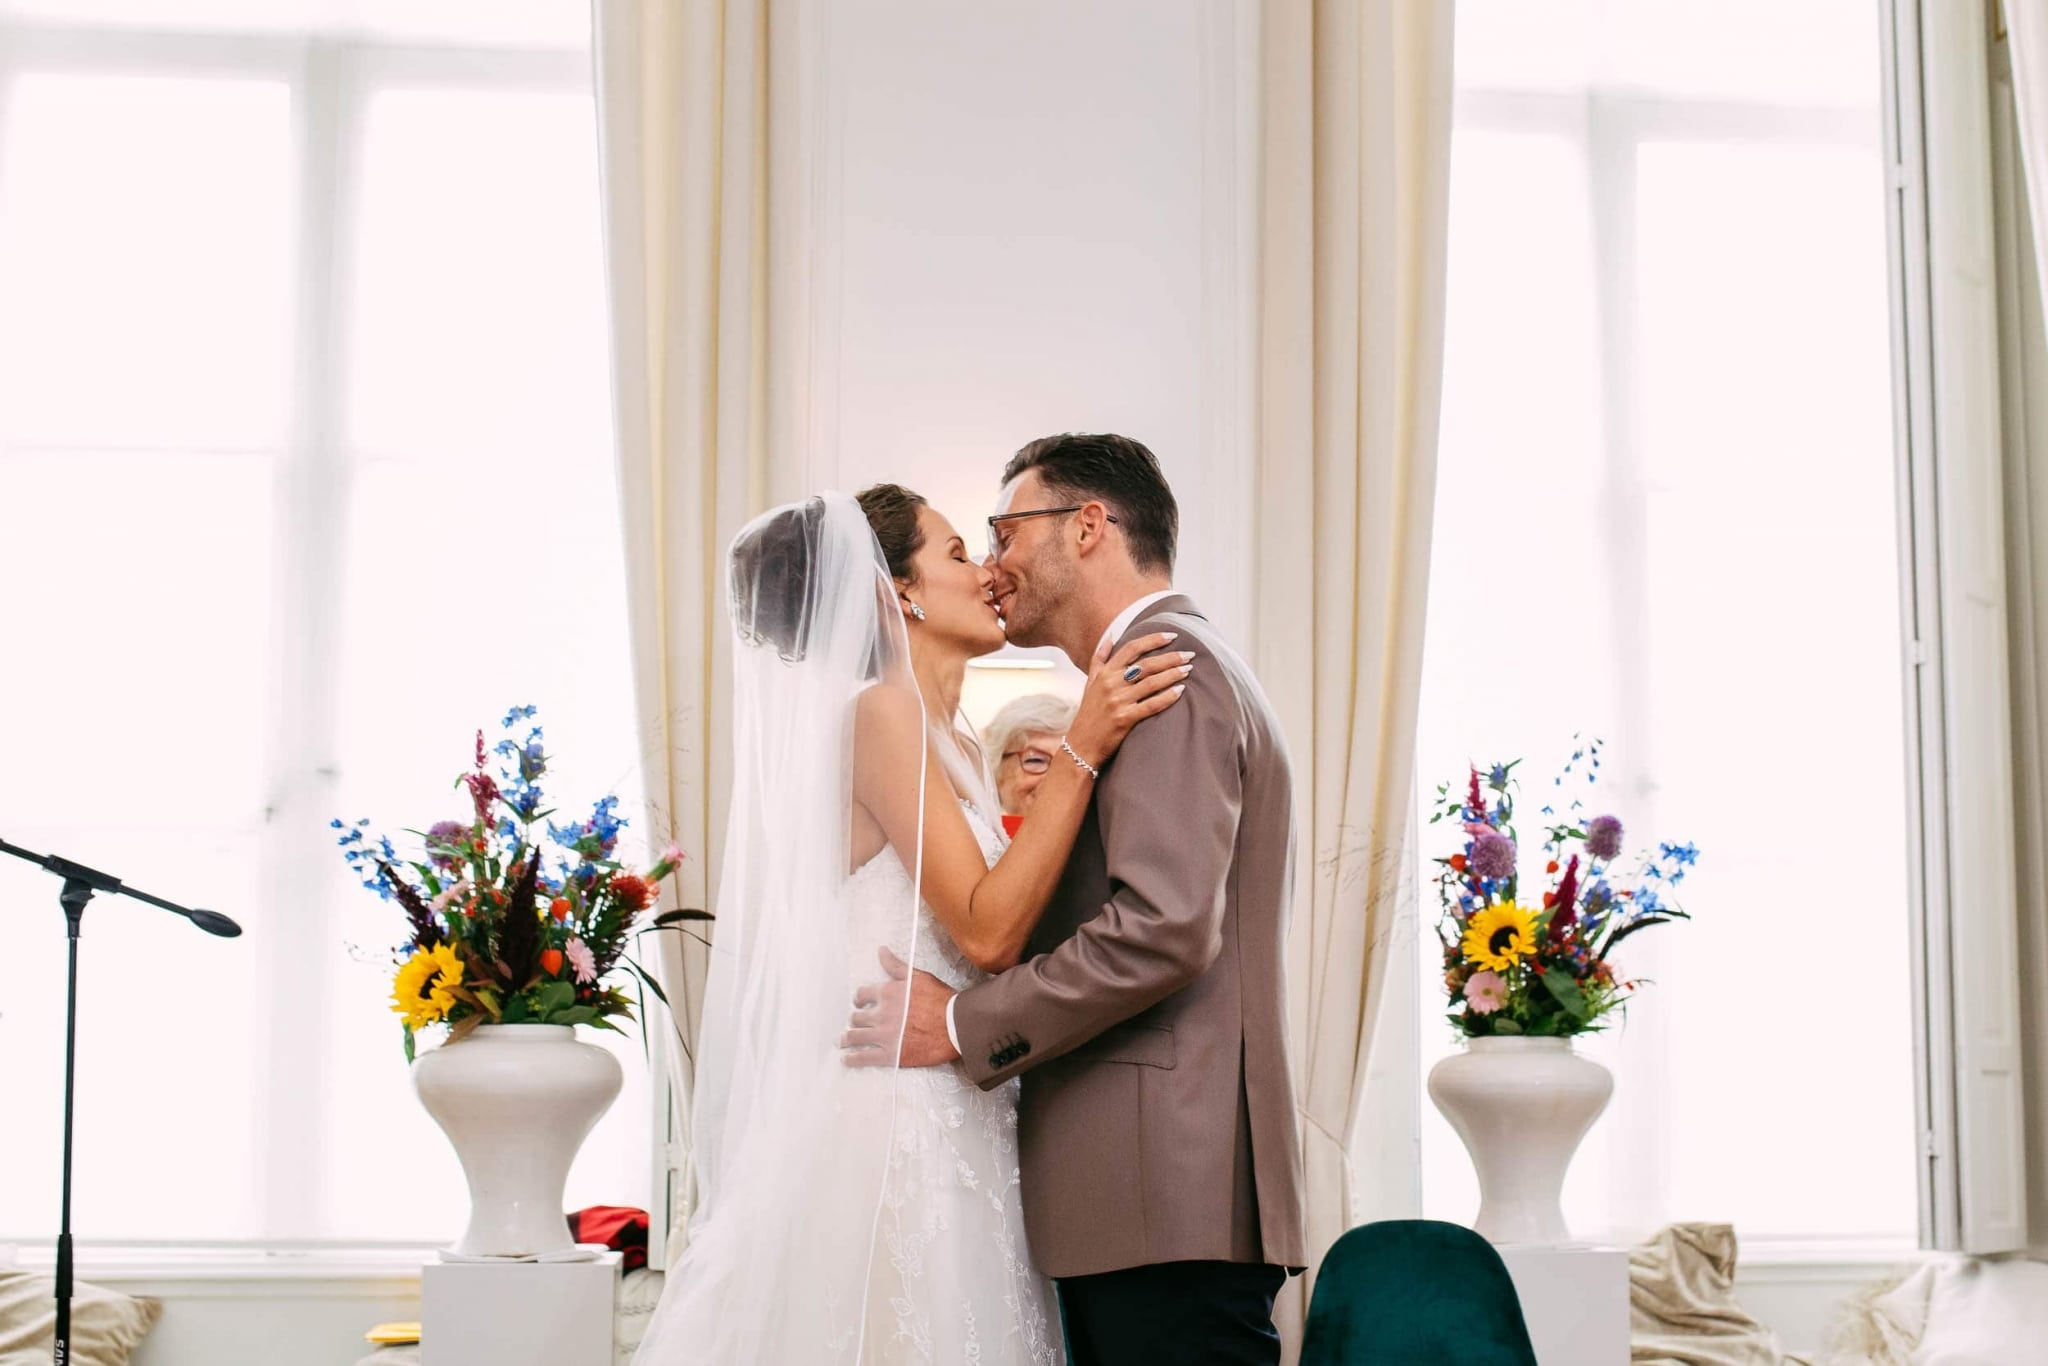 Een bruid en bruidegom kussen voor grote ramen.